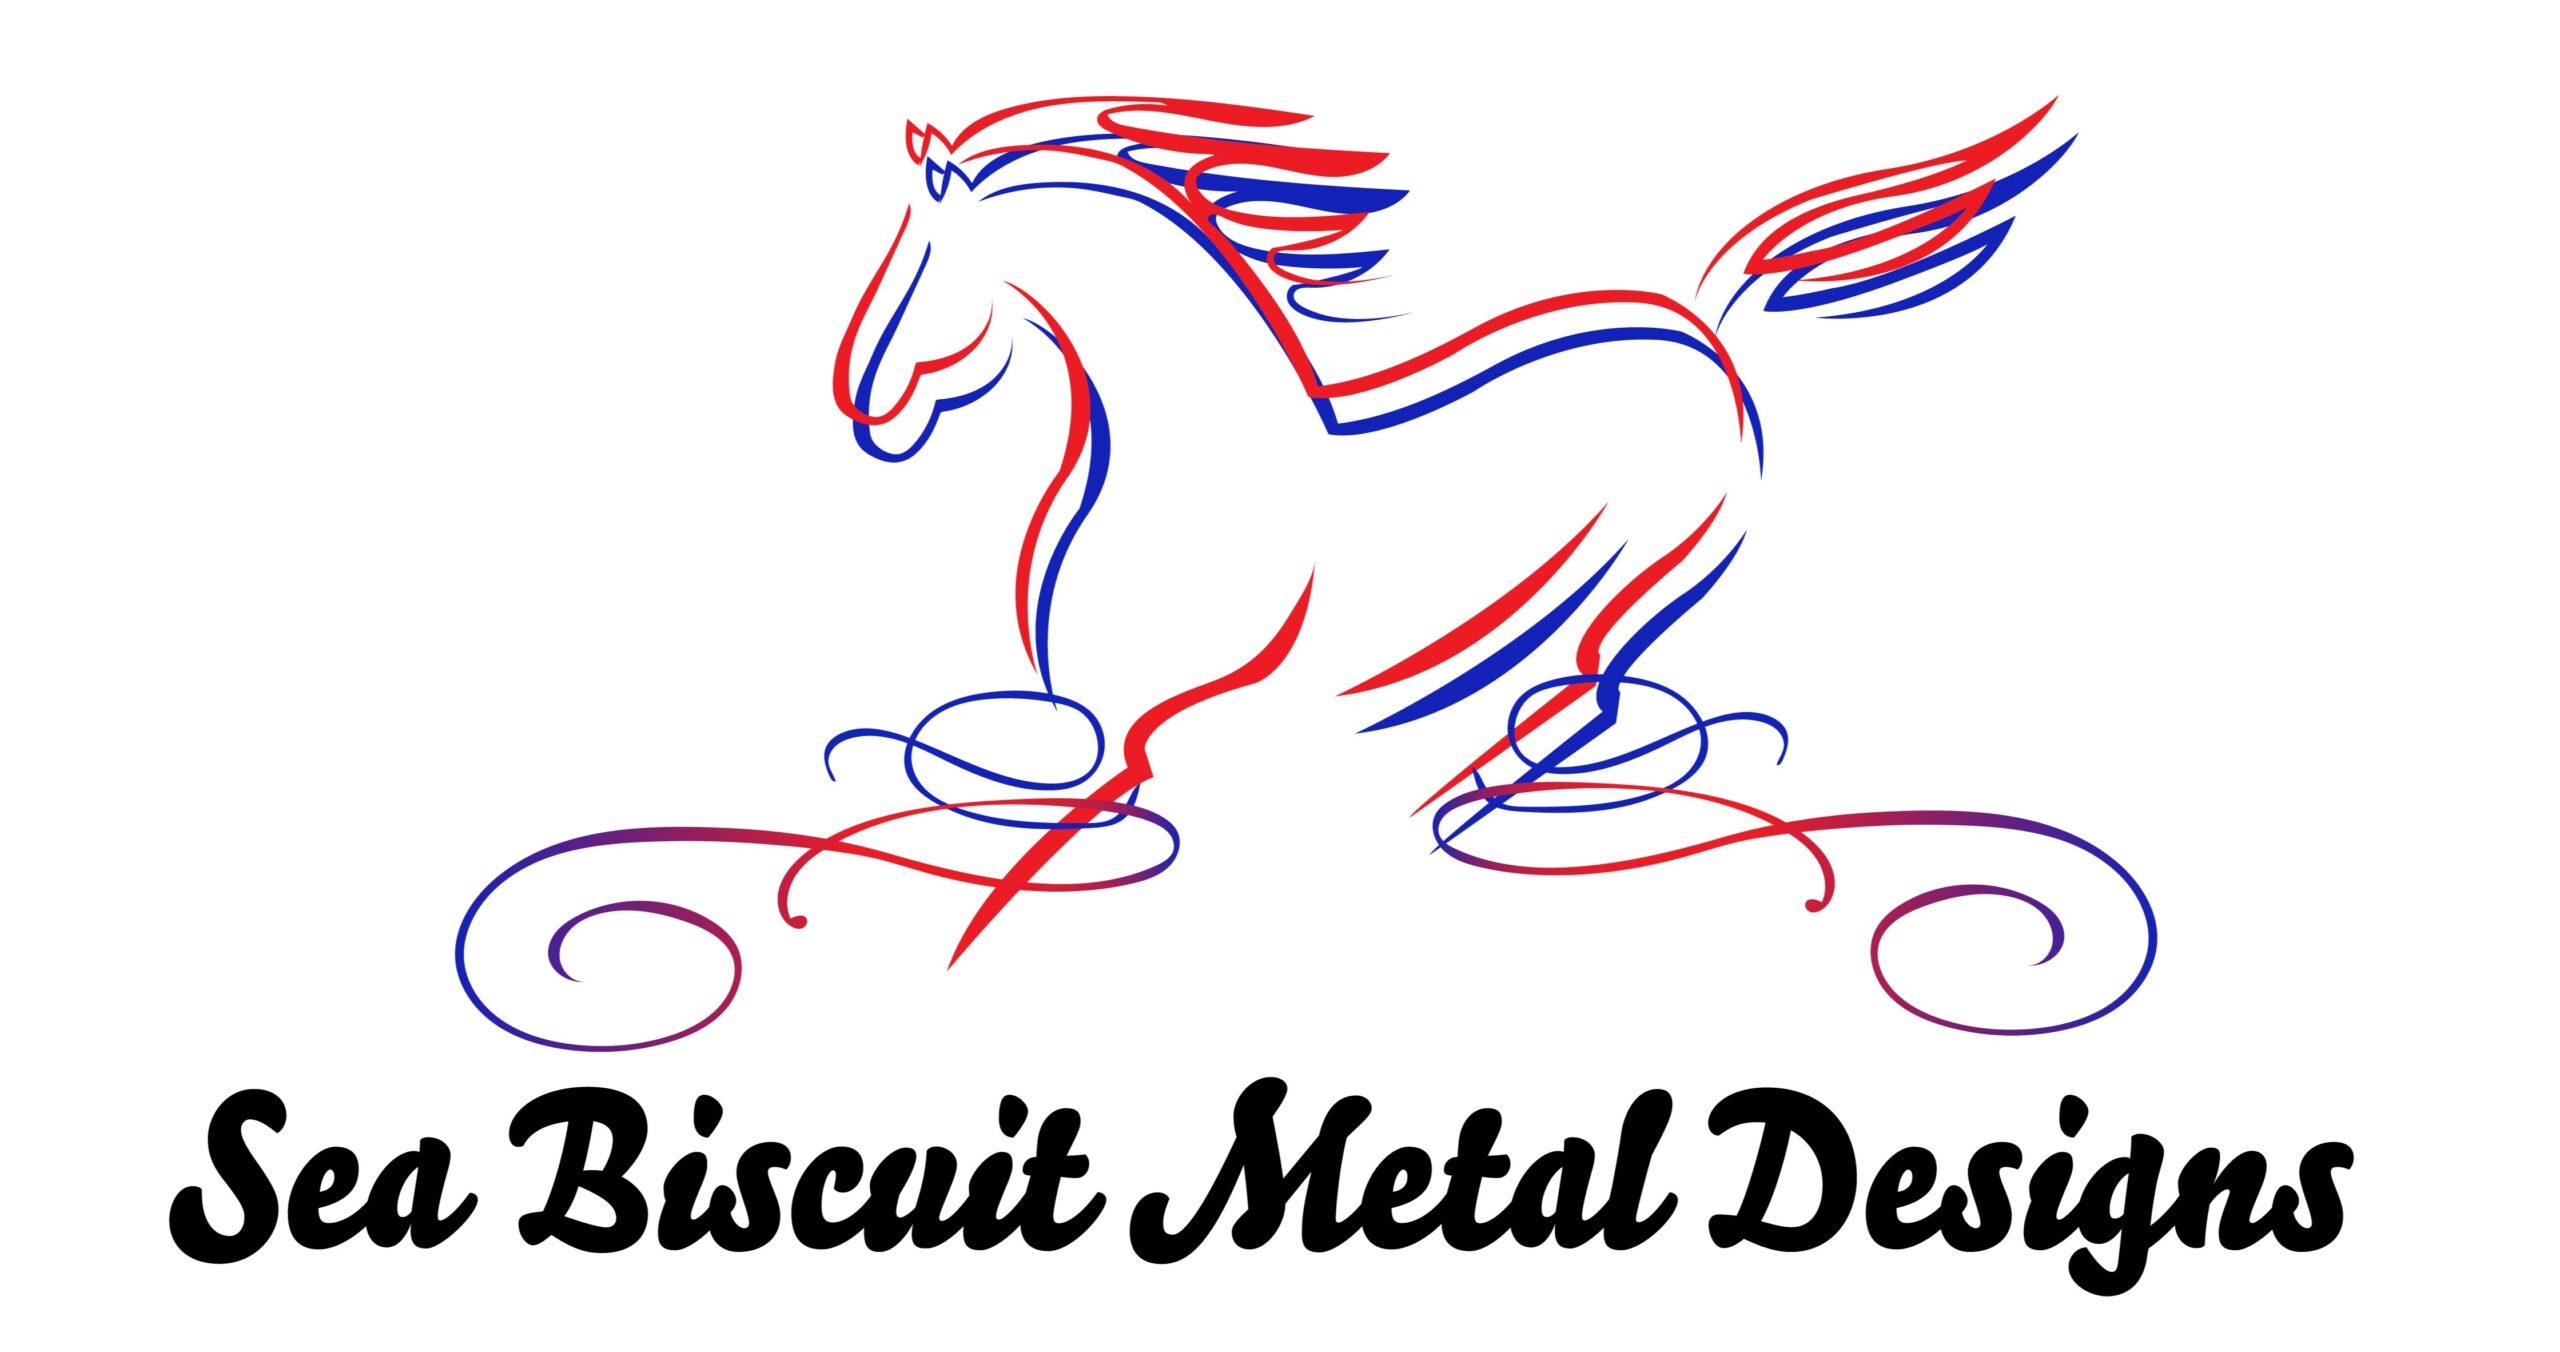 Sea Biscuit Metal Designs